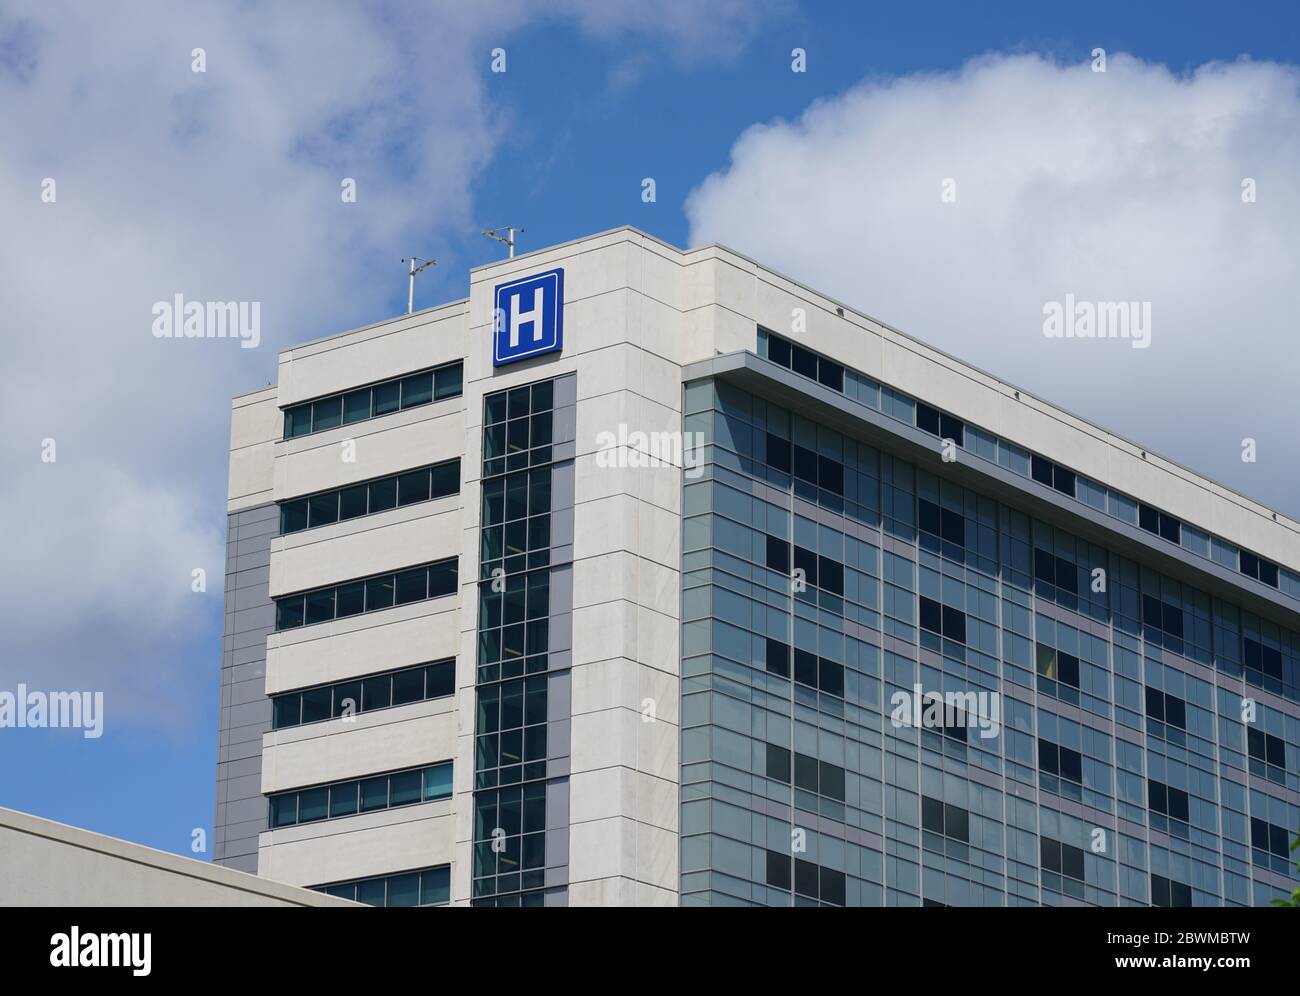 Grand bâtiment moderne avec lettre H bleue pour l'hôpital Banque D'Images